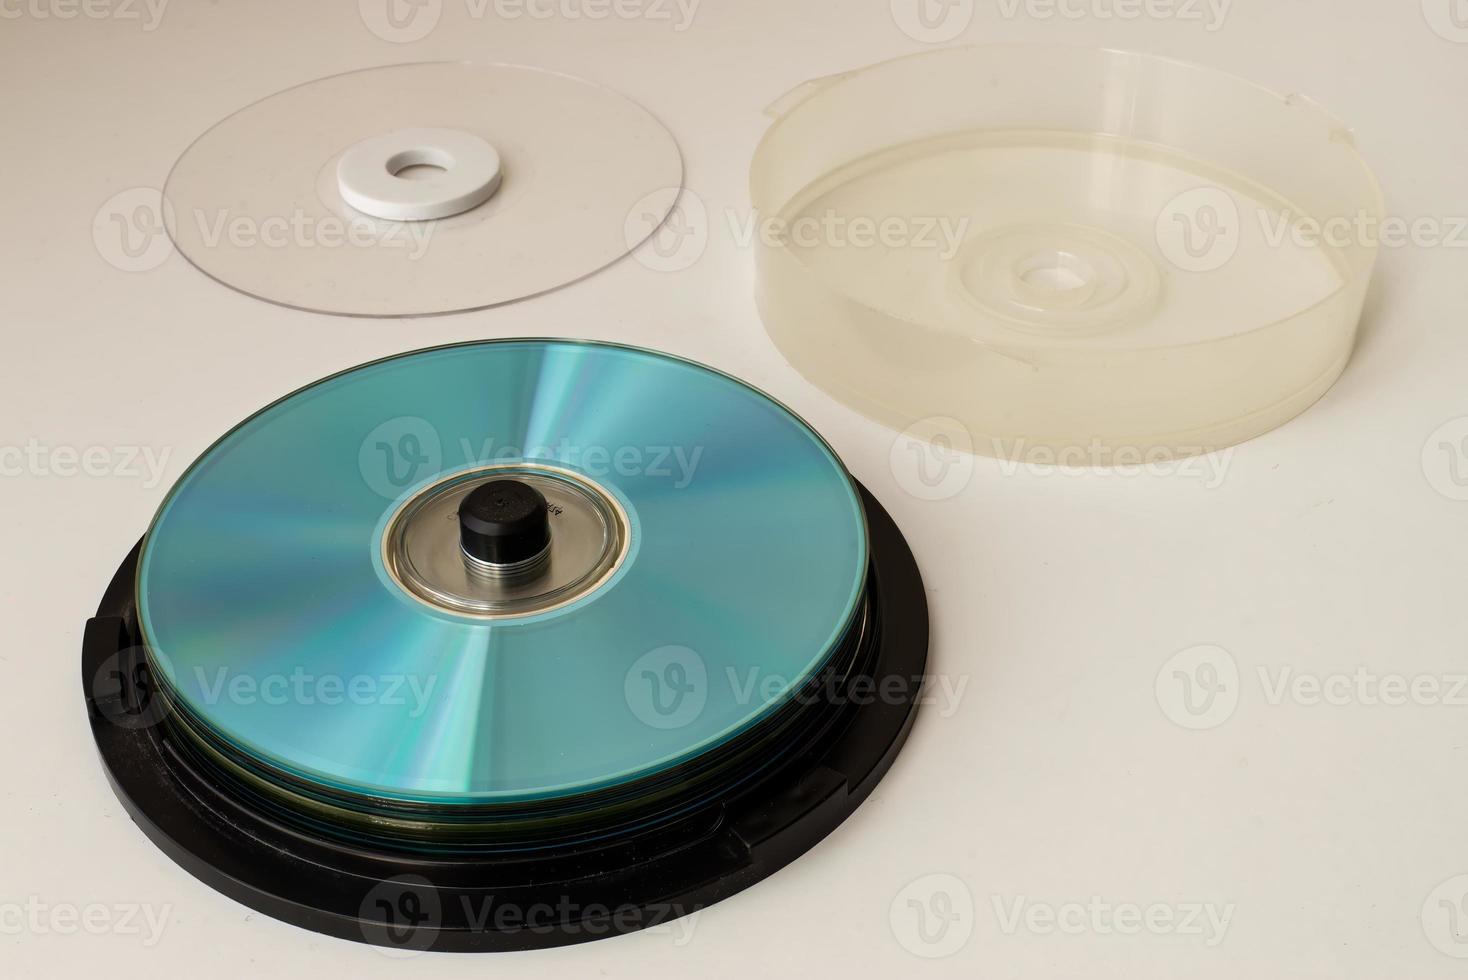 contenedor de cd y dvd de plástico sobre fondo blanco. Tecnología de los 90. foto